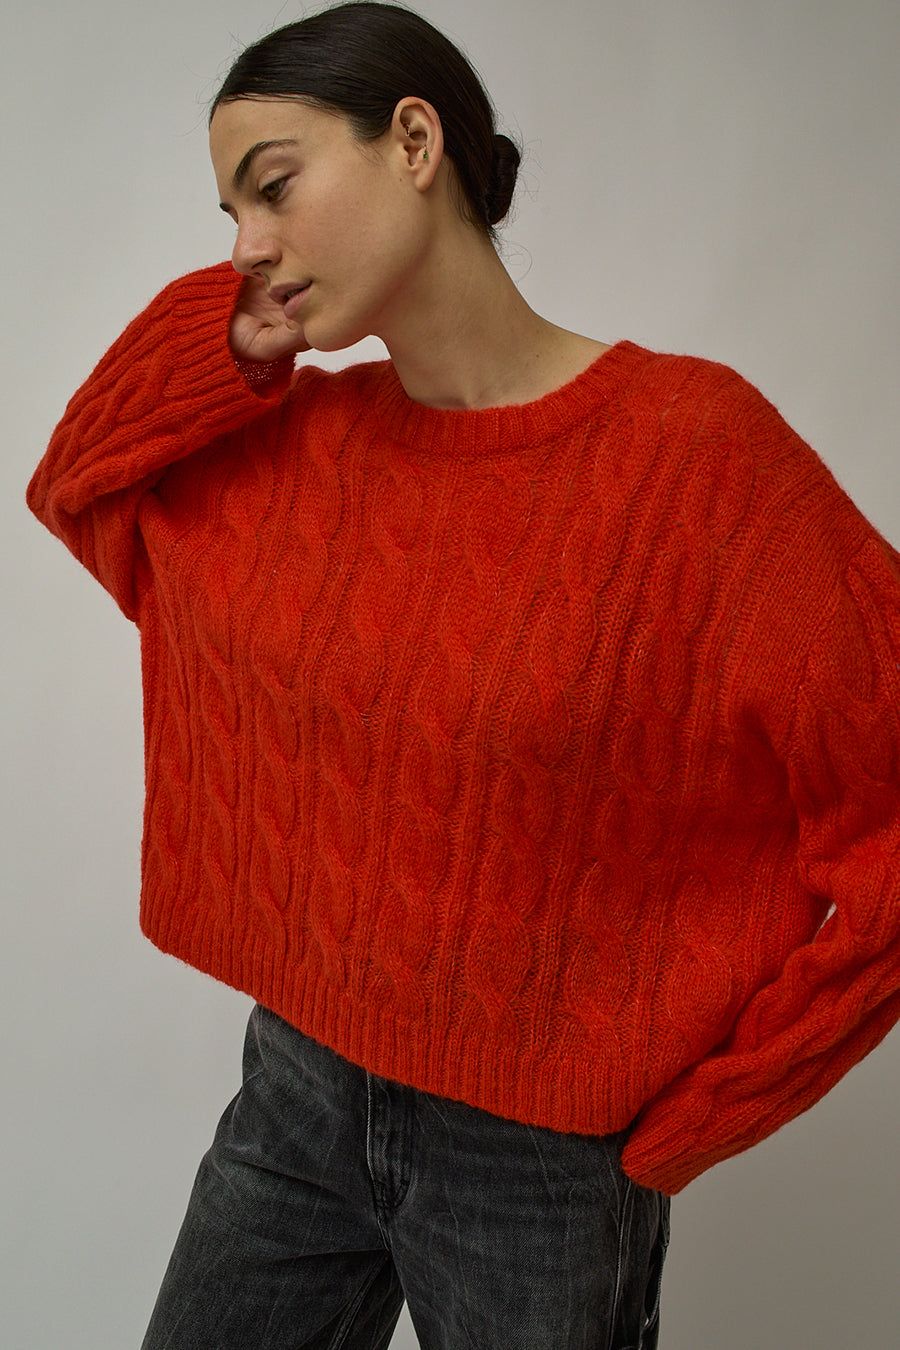 Atelier Delphine Agata Sweater in Scarlet